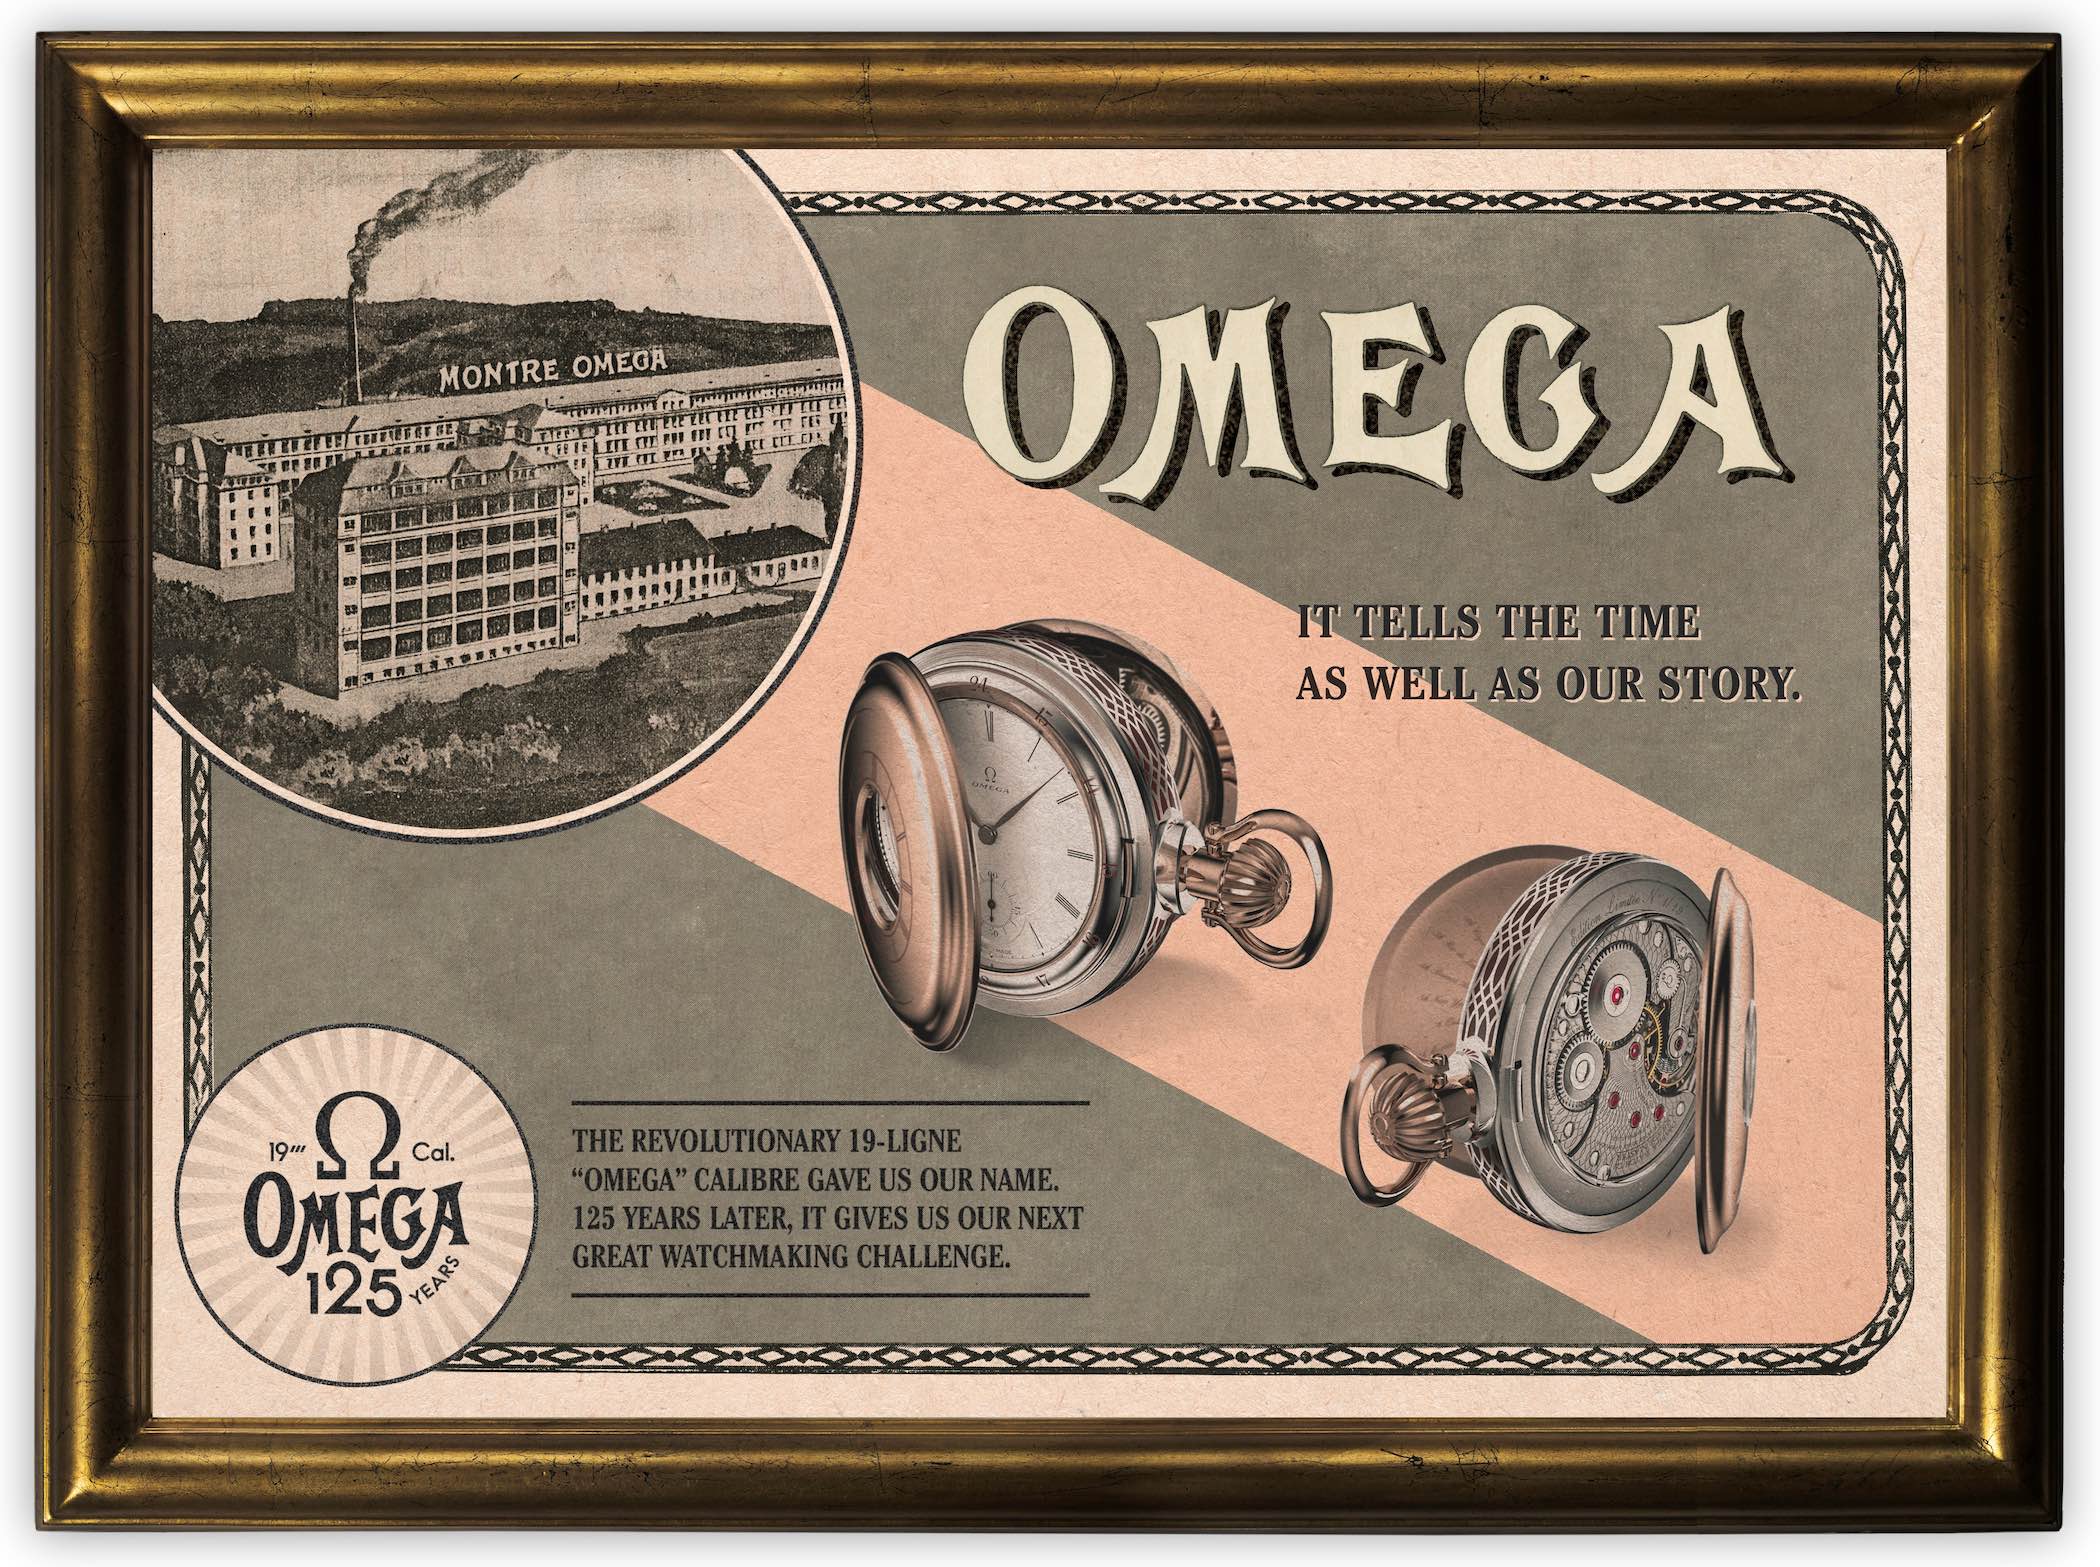 Omega's Calibre 19-ligne and De Ville Tresor 125th Anniversary   The-Reborn-Pocket-Watch-19-ligne-calibre-Omega-125th-anniversary-1